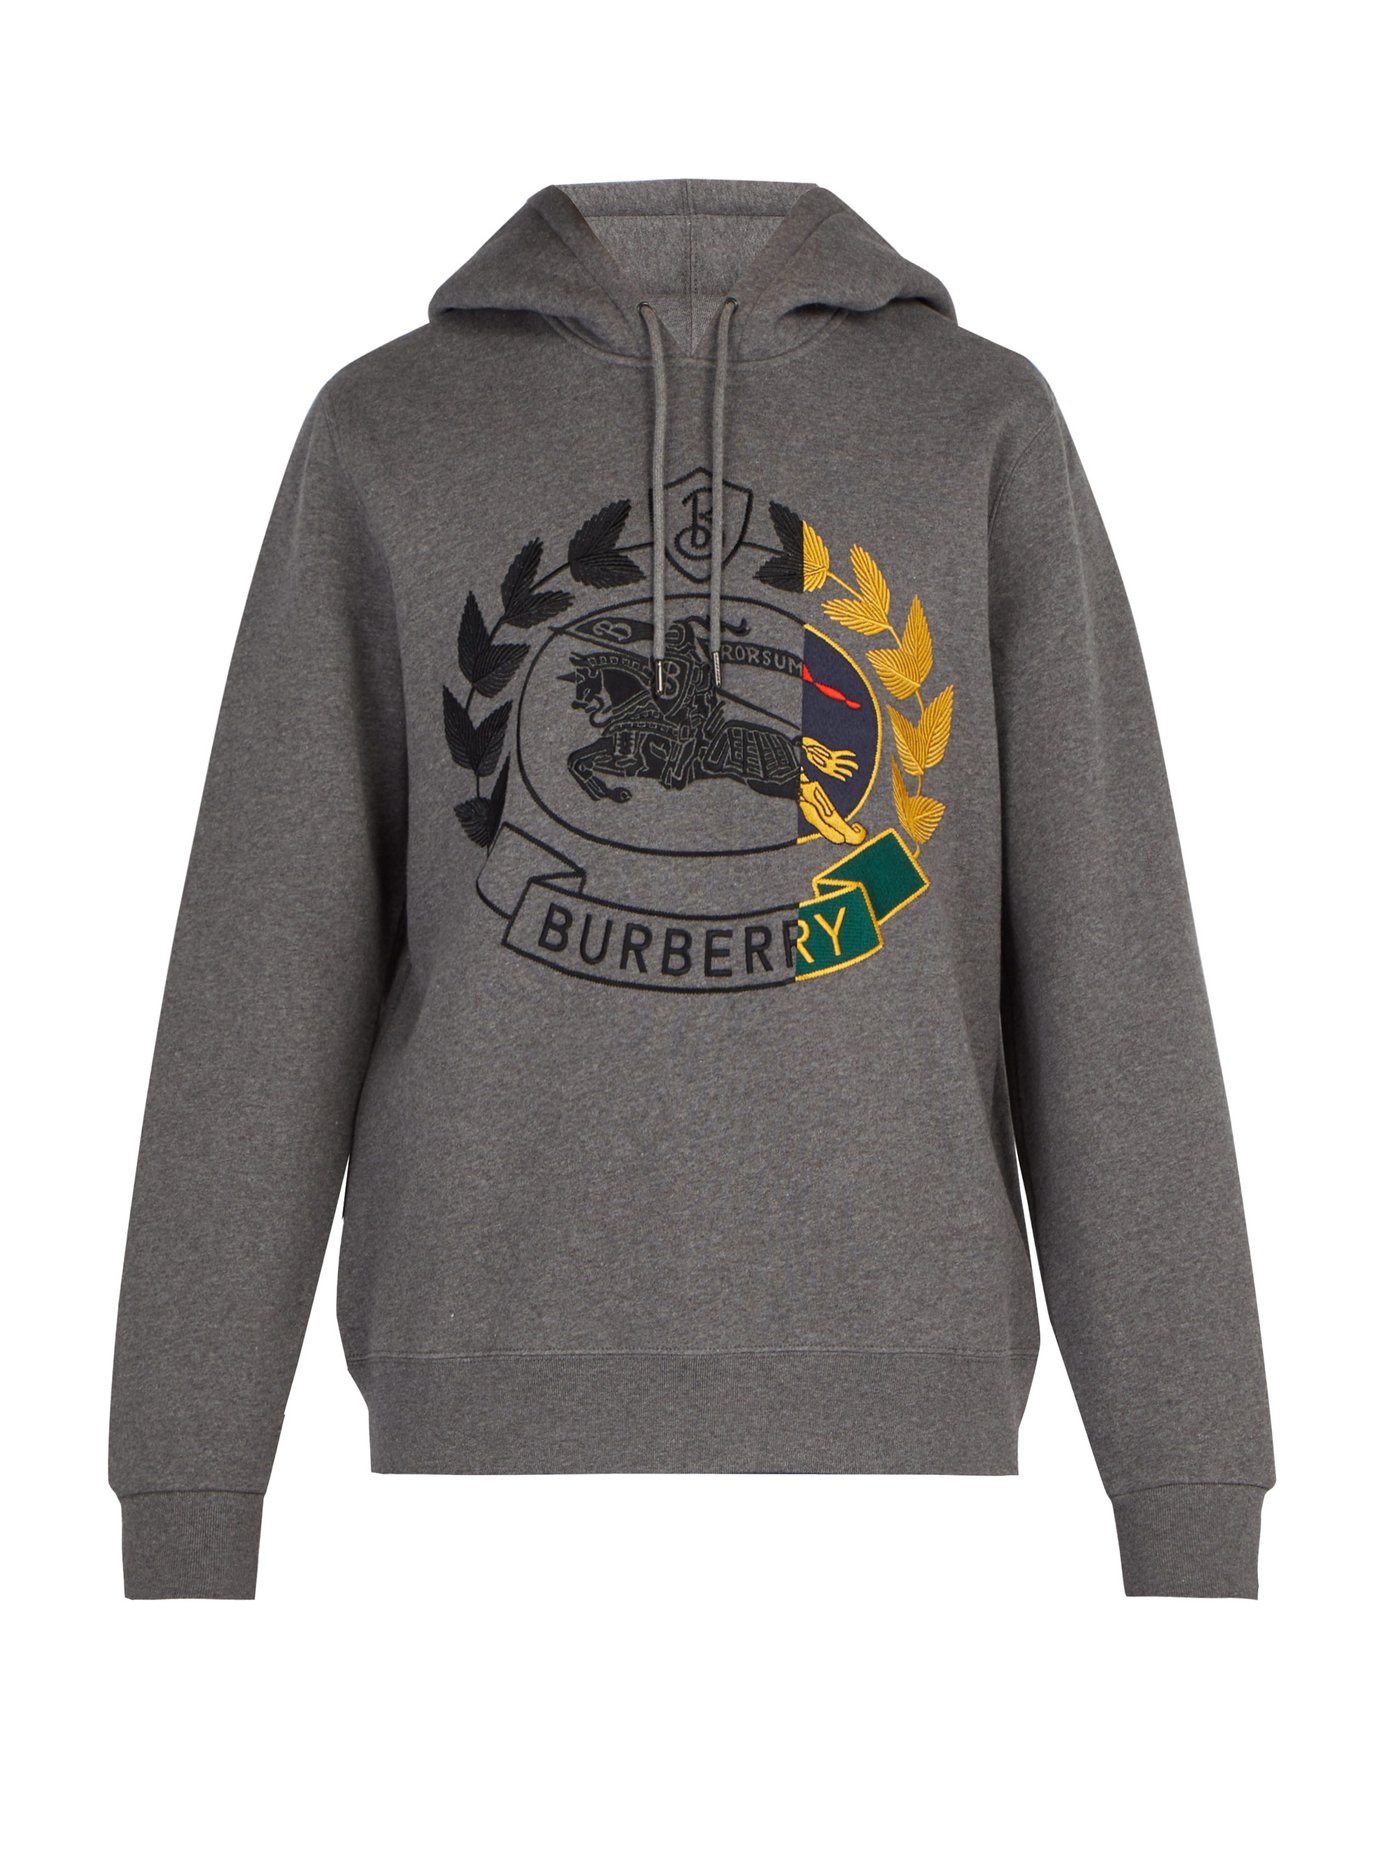 burberry men's hooded sweatshirt